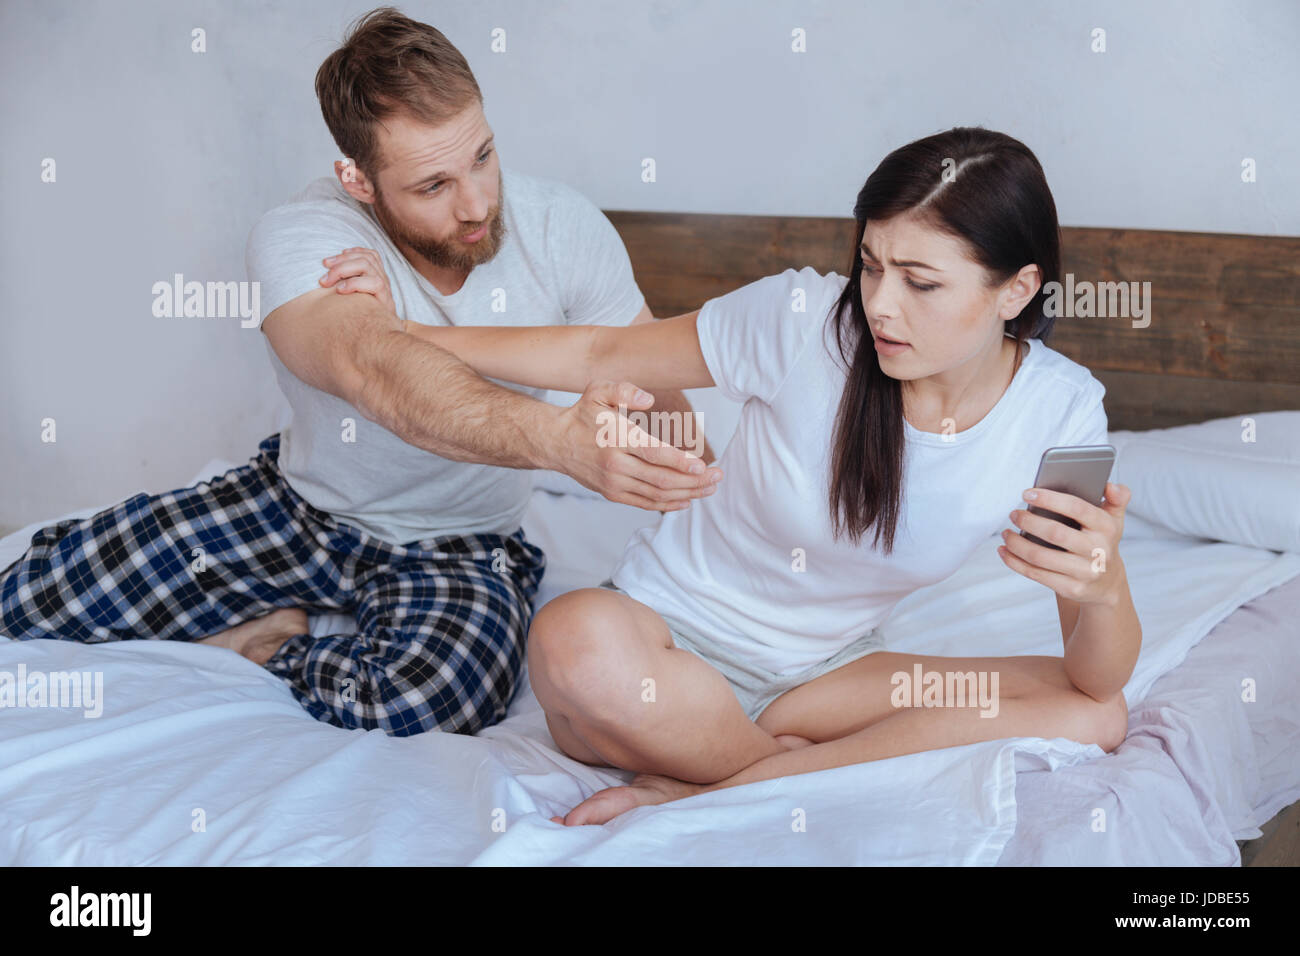 Frustriert jungen Mann unter seine Freundin smartphone Stockfoto